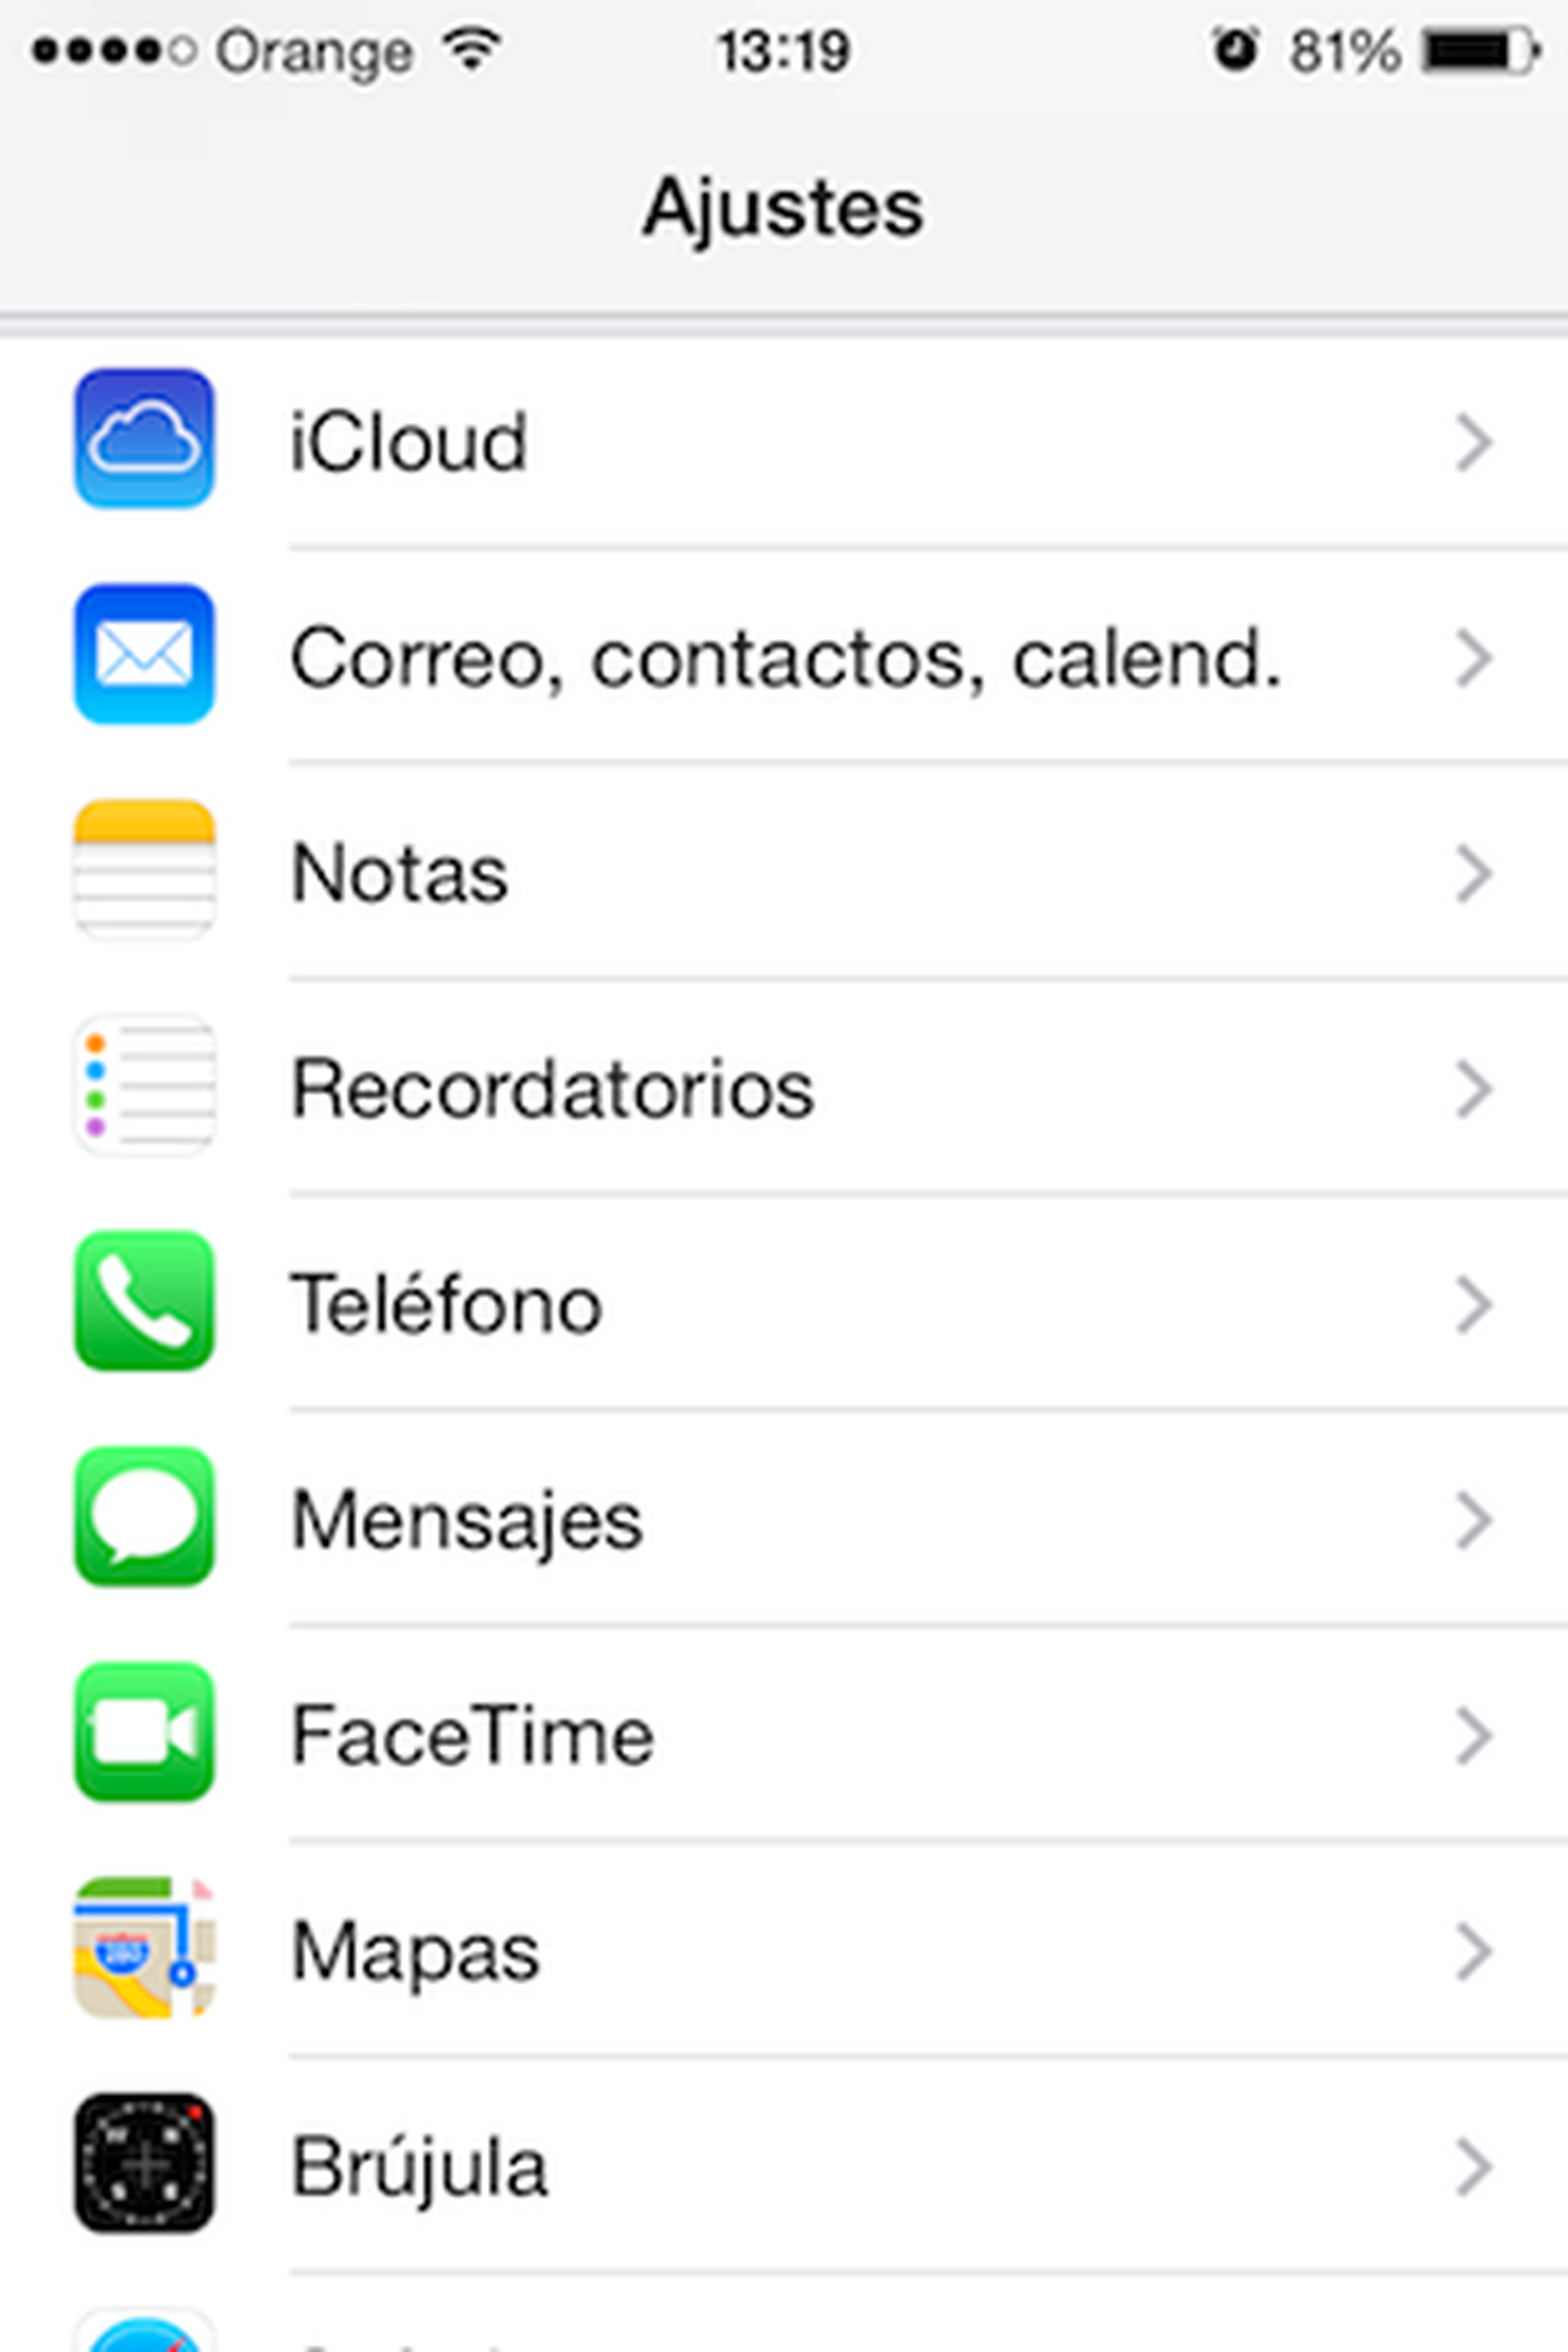 Cómo liberar y gestionar el espacio de iCloud desde iPhone